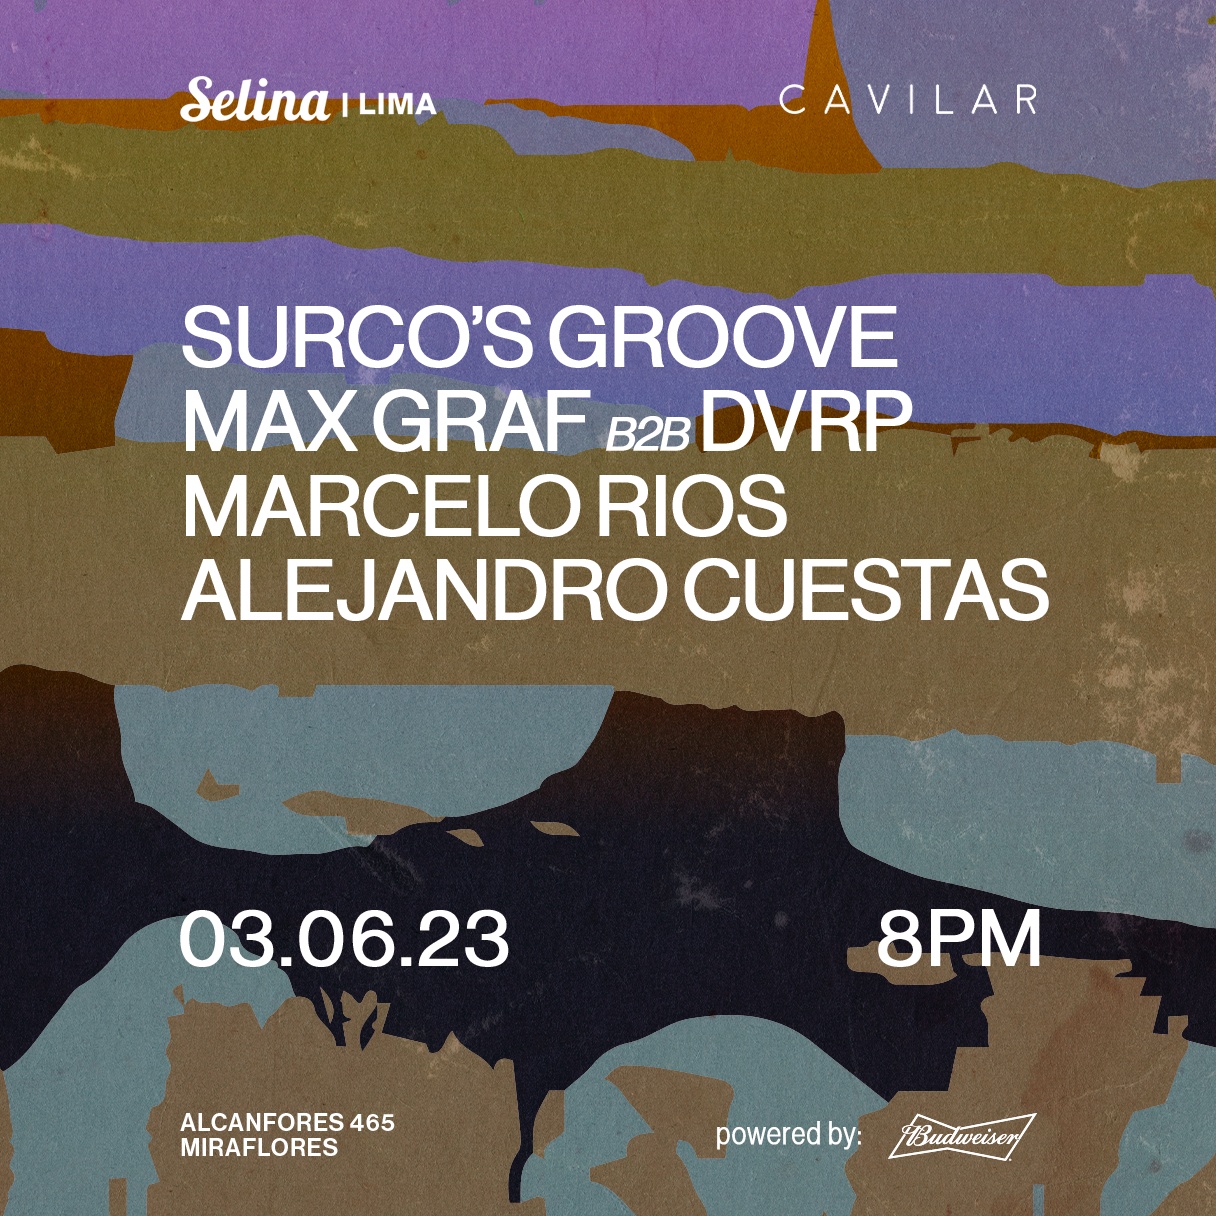 Cavilar x Selina pres. Surco's Groove, Max Graf b2b DVRP, Marcelo Rios, Alejandro Cuestas - フライヤー表